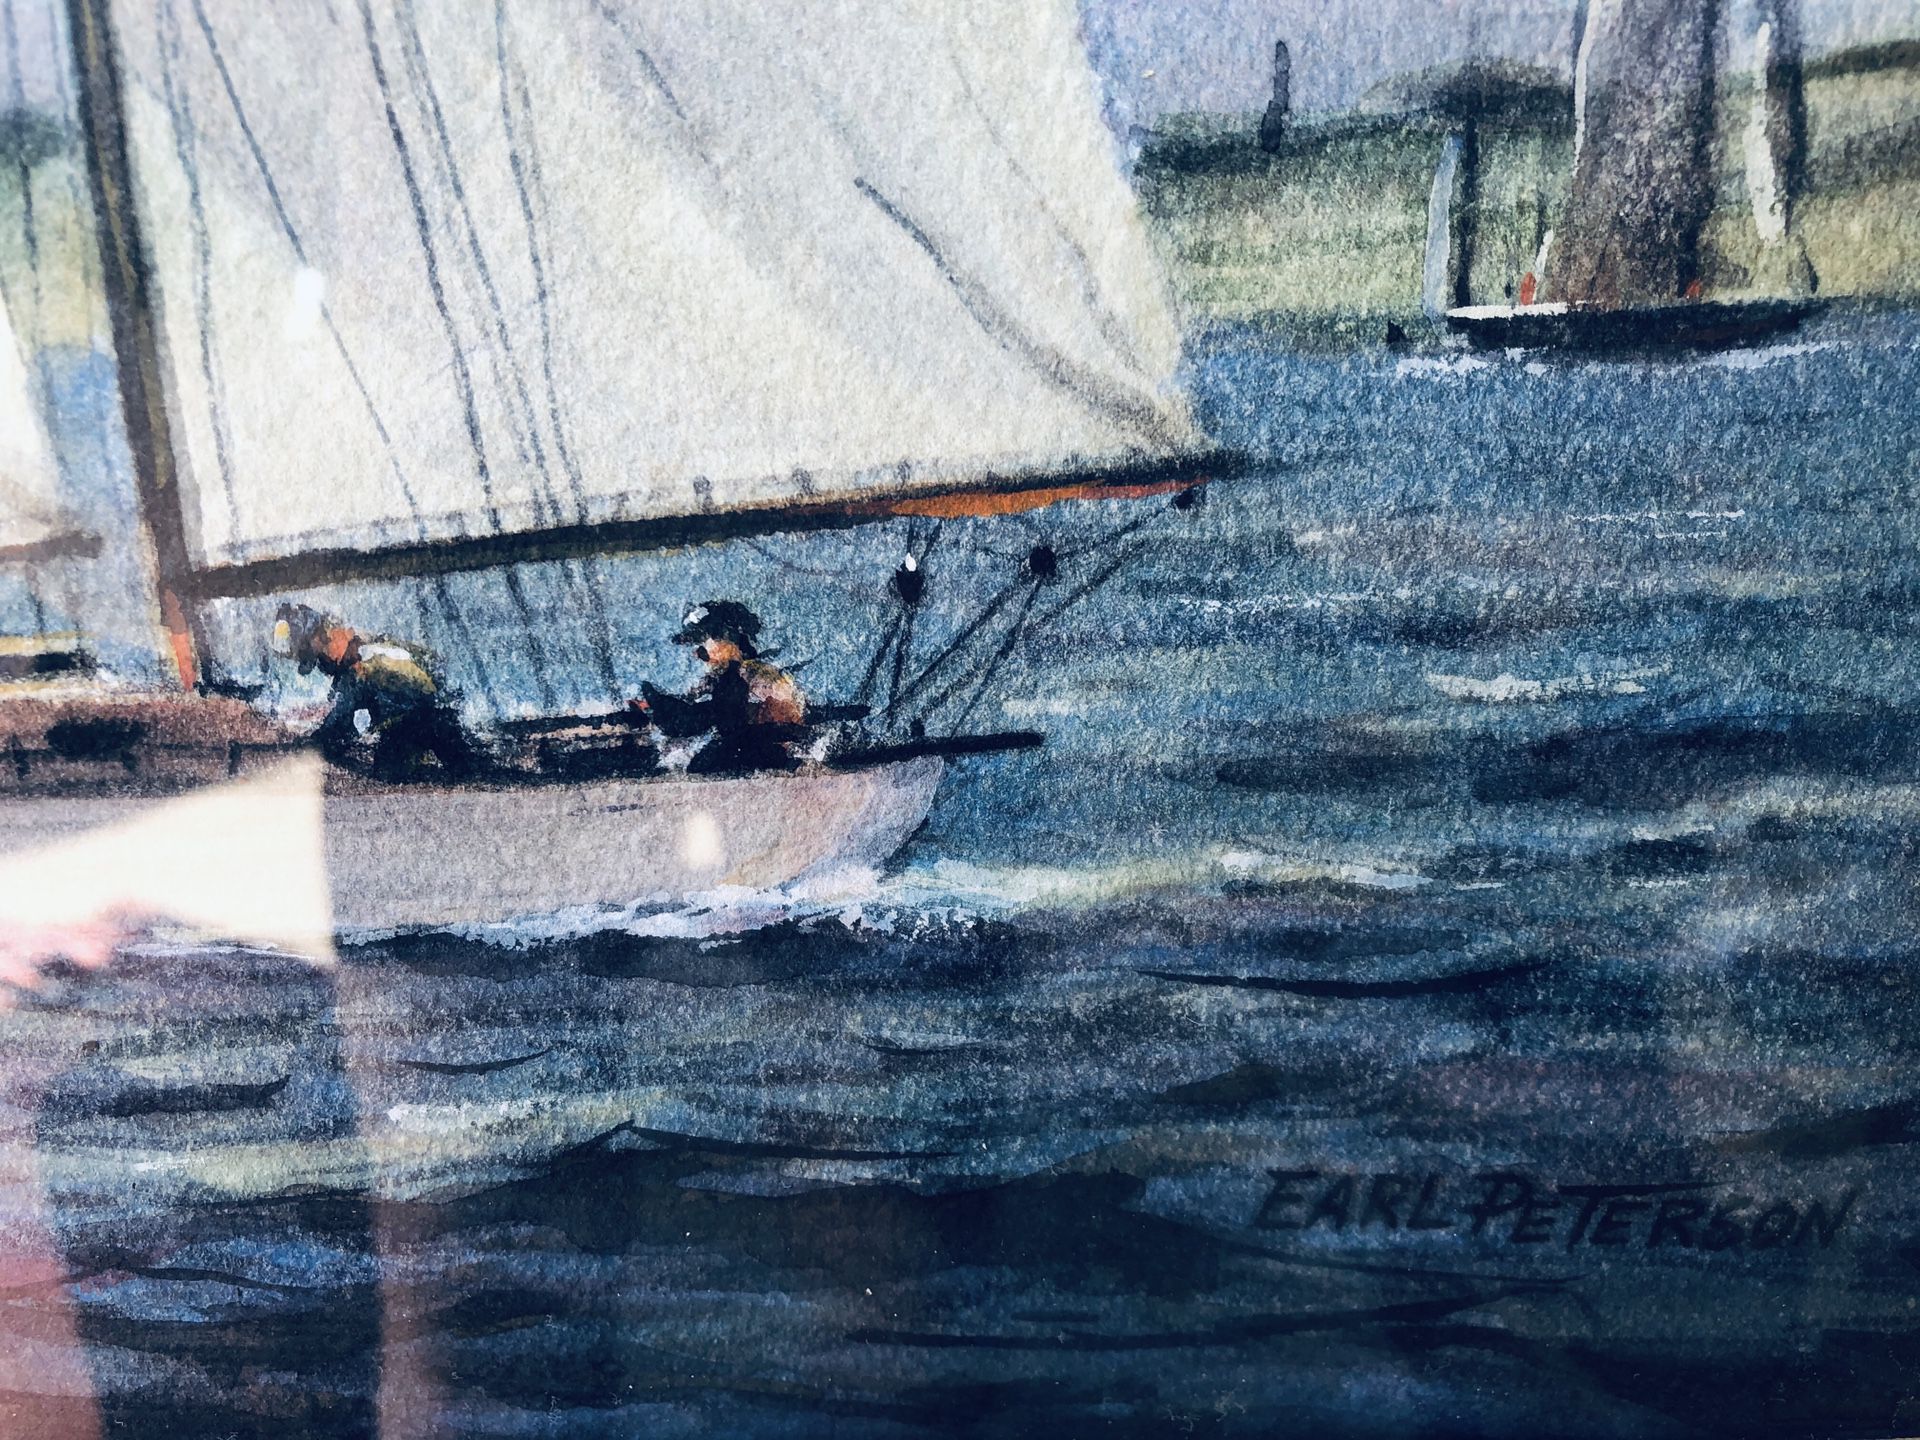 Sail boat painting